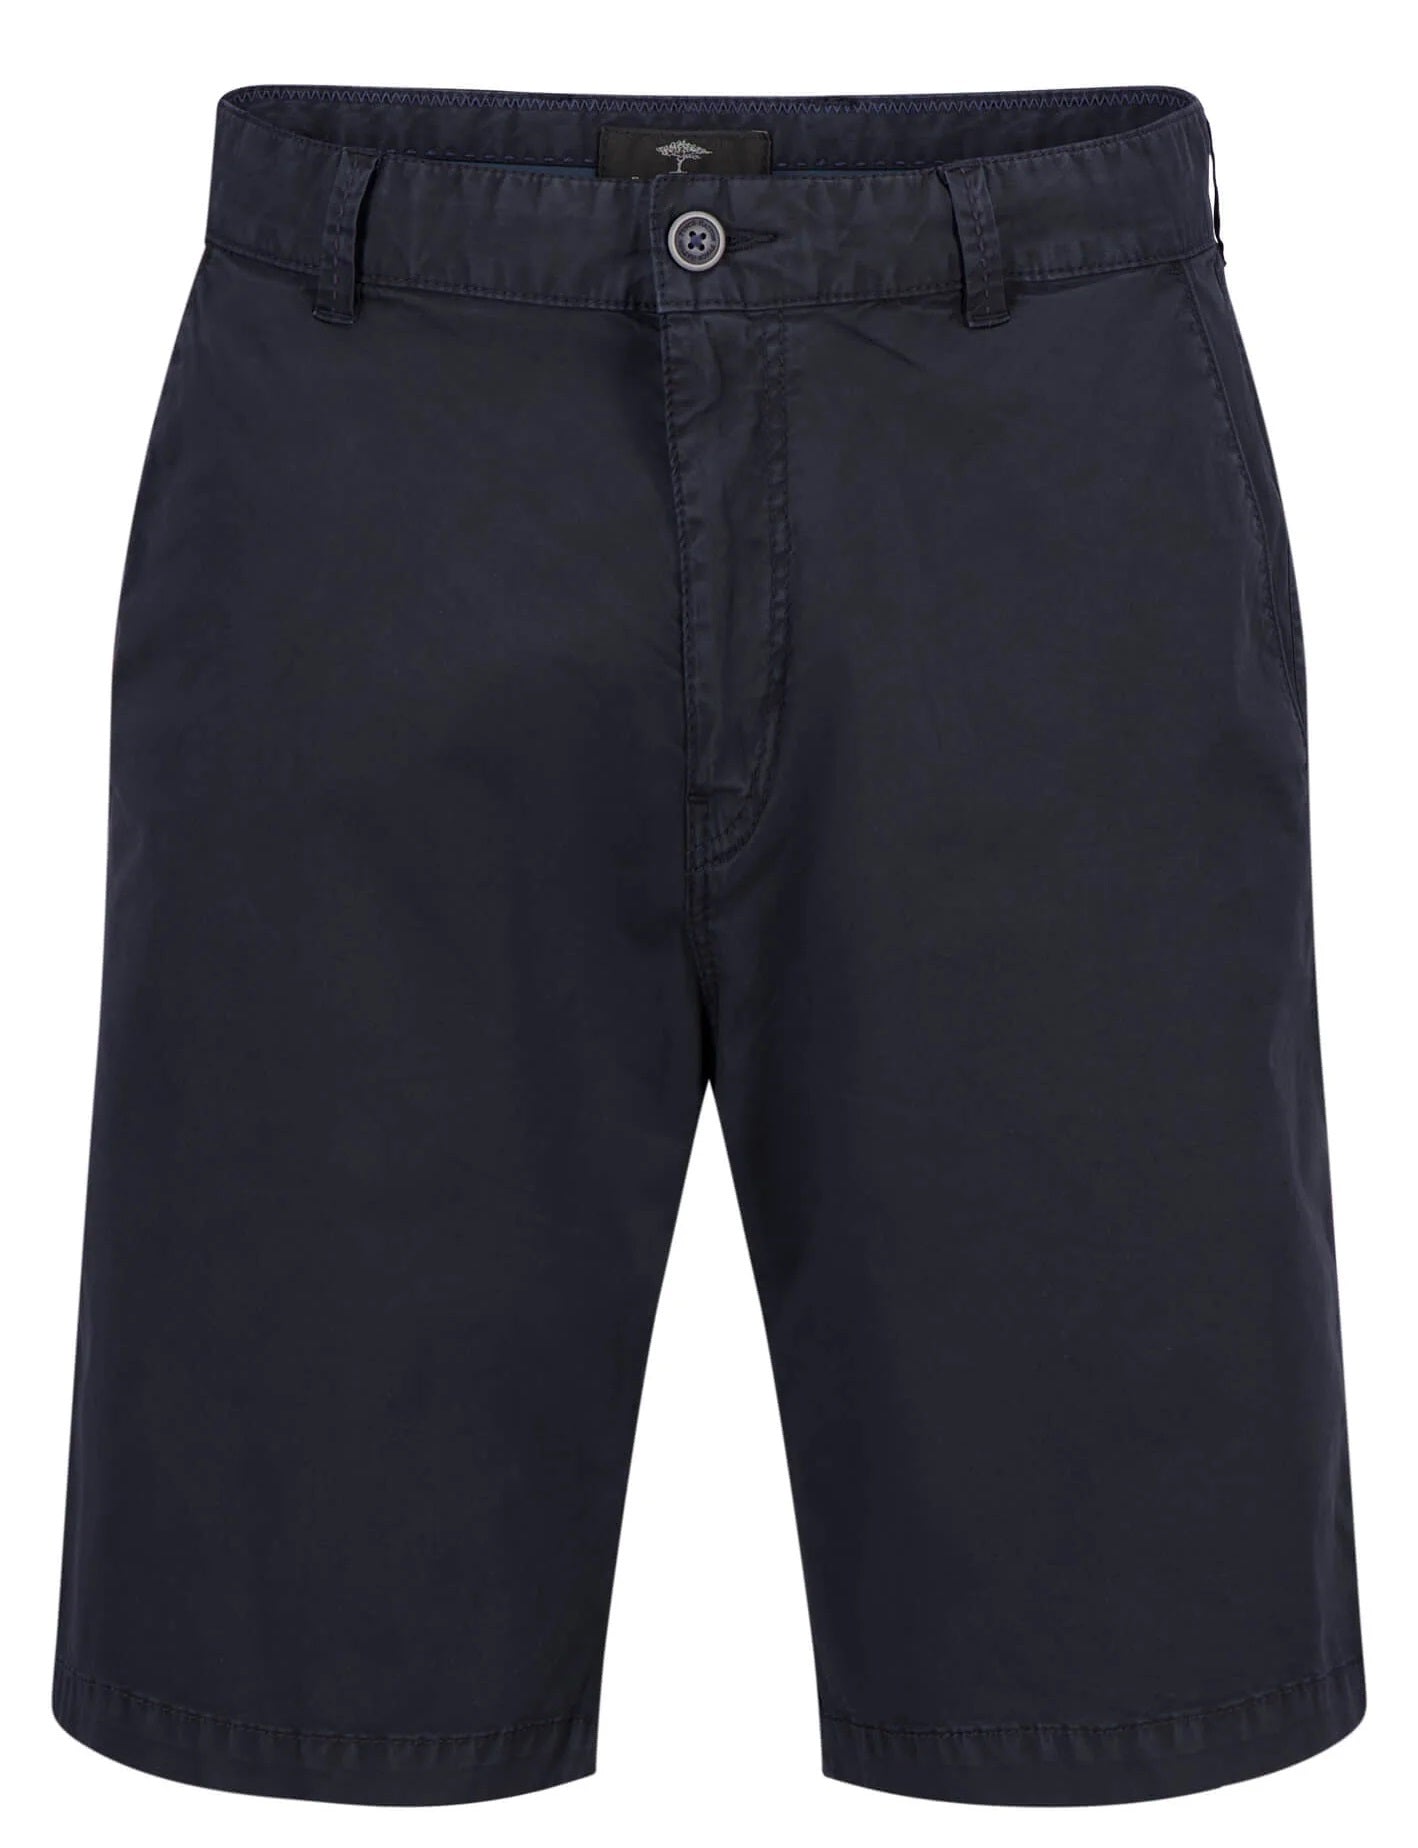 FYNCH HATTON Bermuda Shorts - Men's Stretch Cotton – Dark Navy